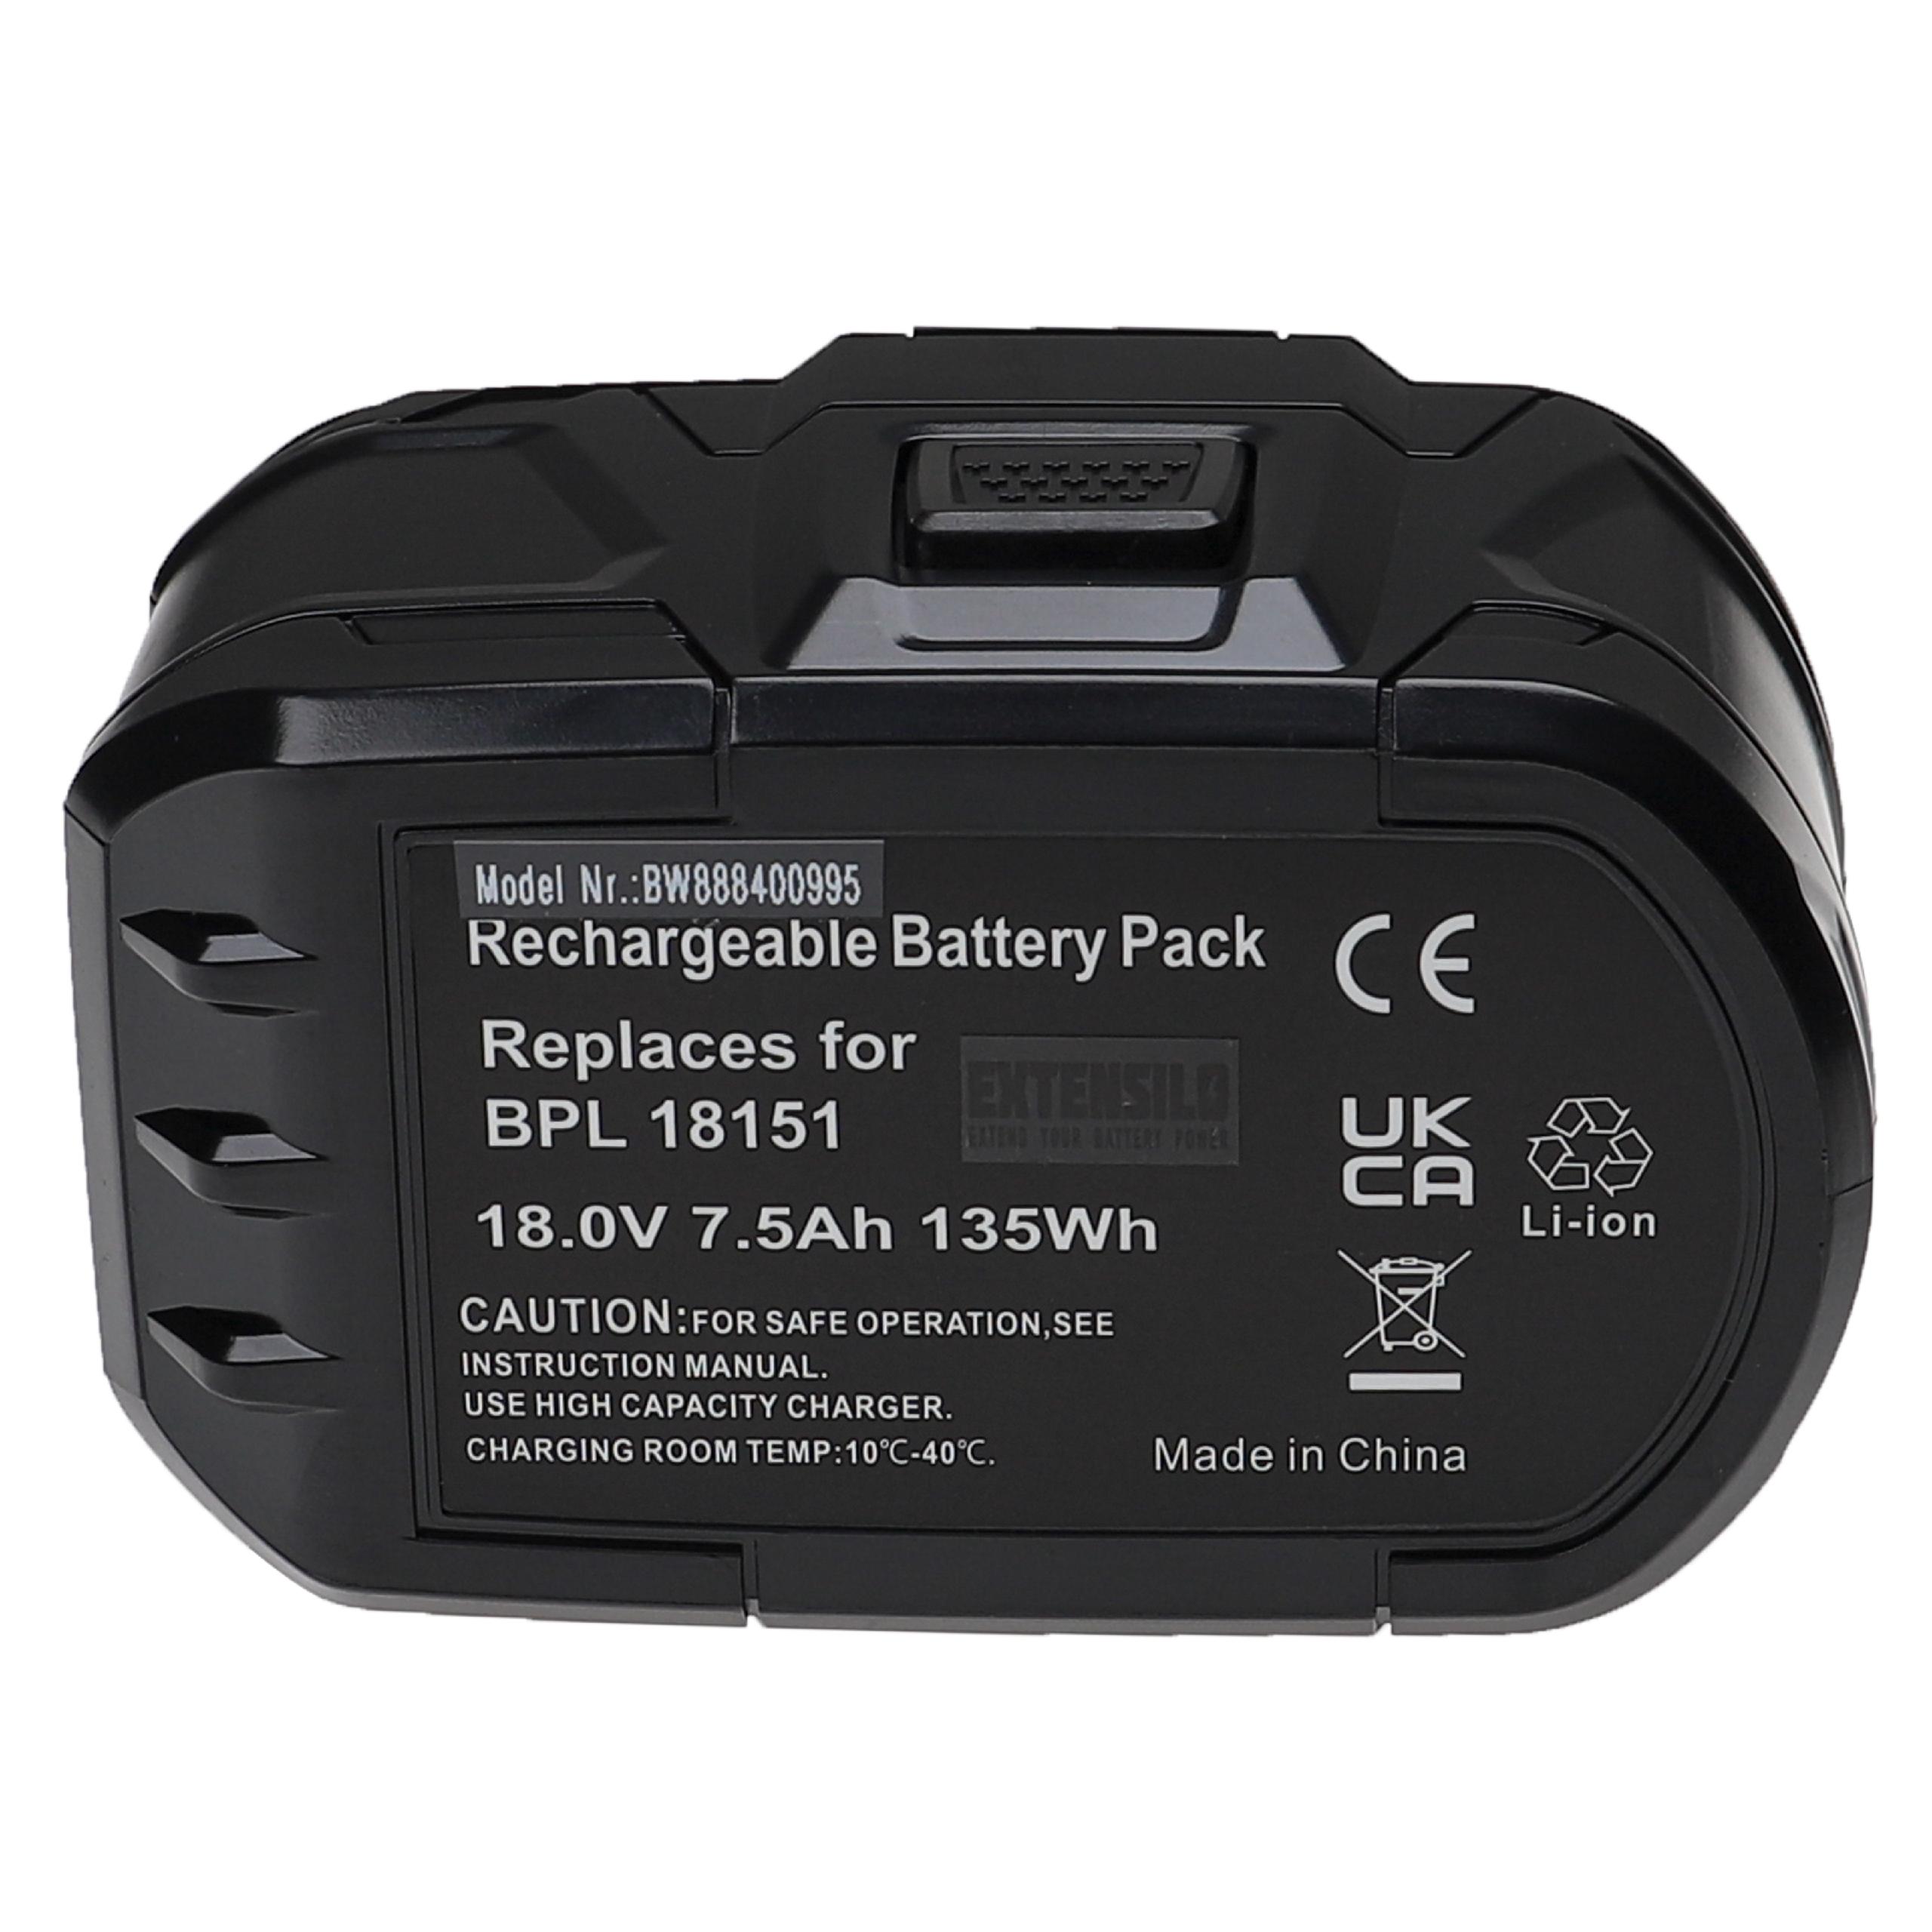 Batteries (3x pièces) remplace Ryobi ABP1803, ABP1801 pour outil électrique - 7500 mAh, 18 V, Li-ion